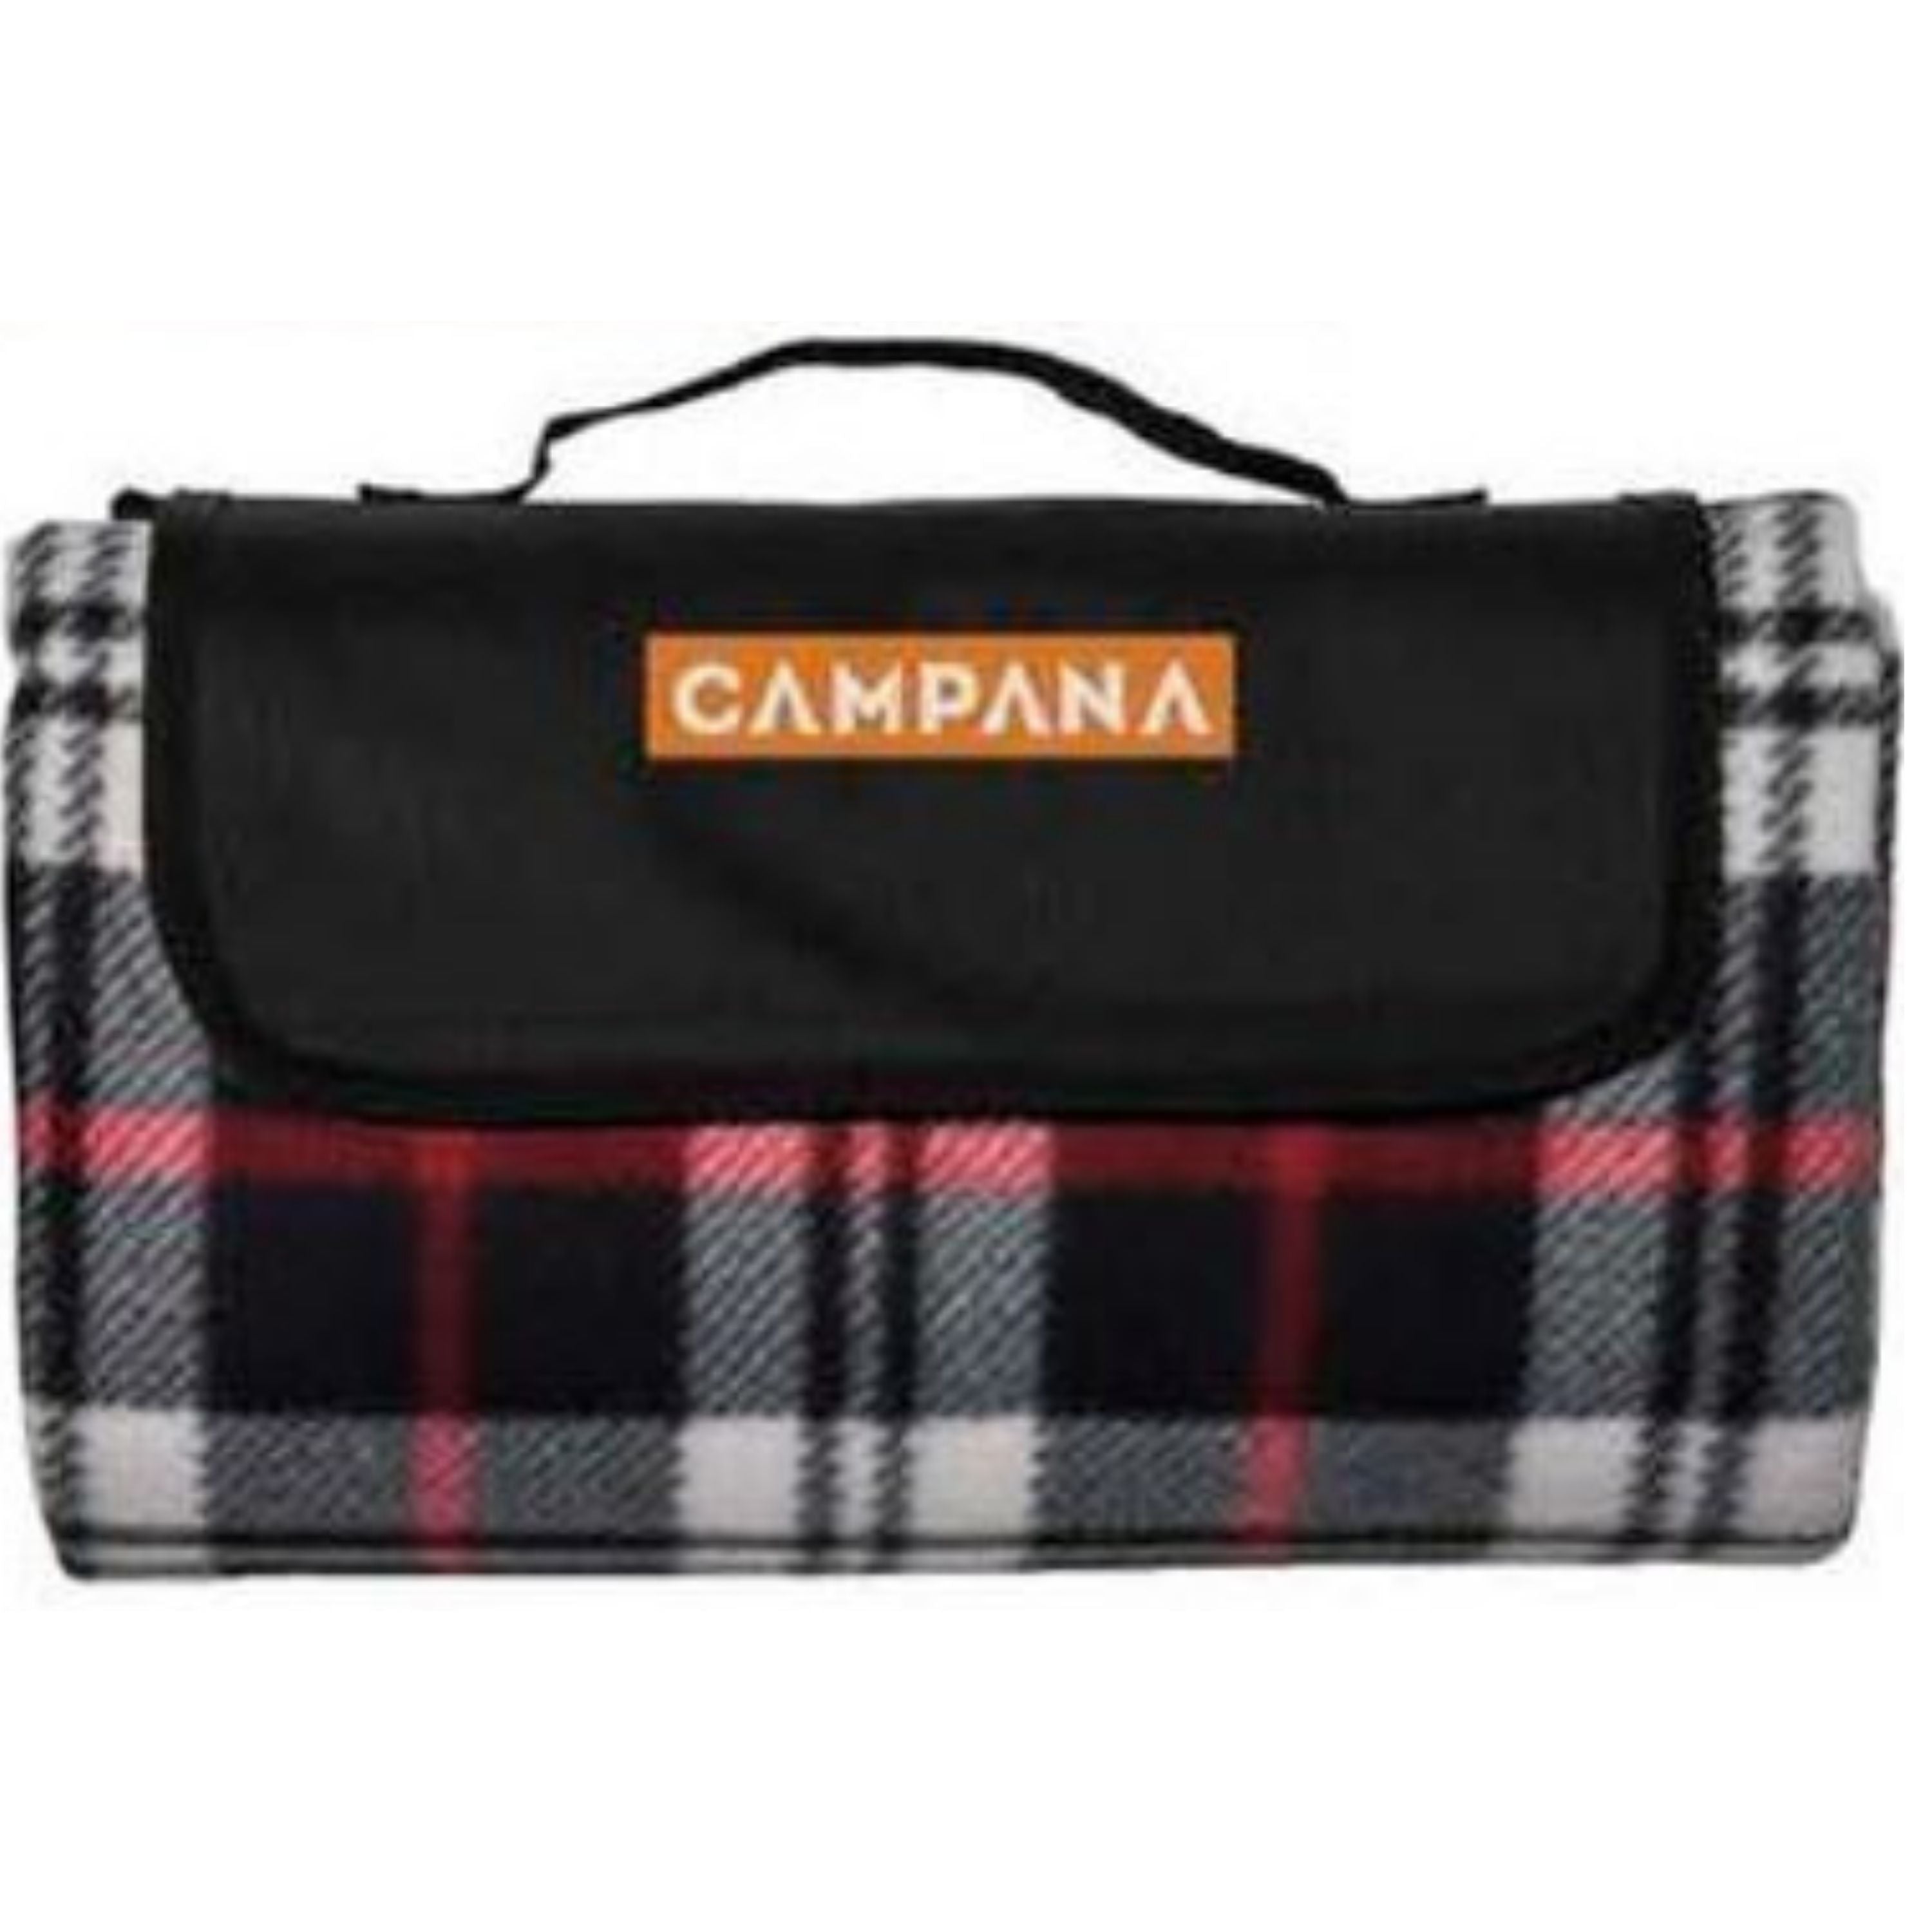 “Campana” picnic blanket